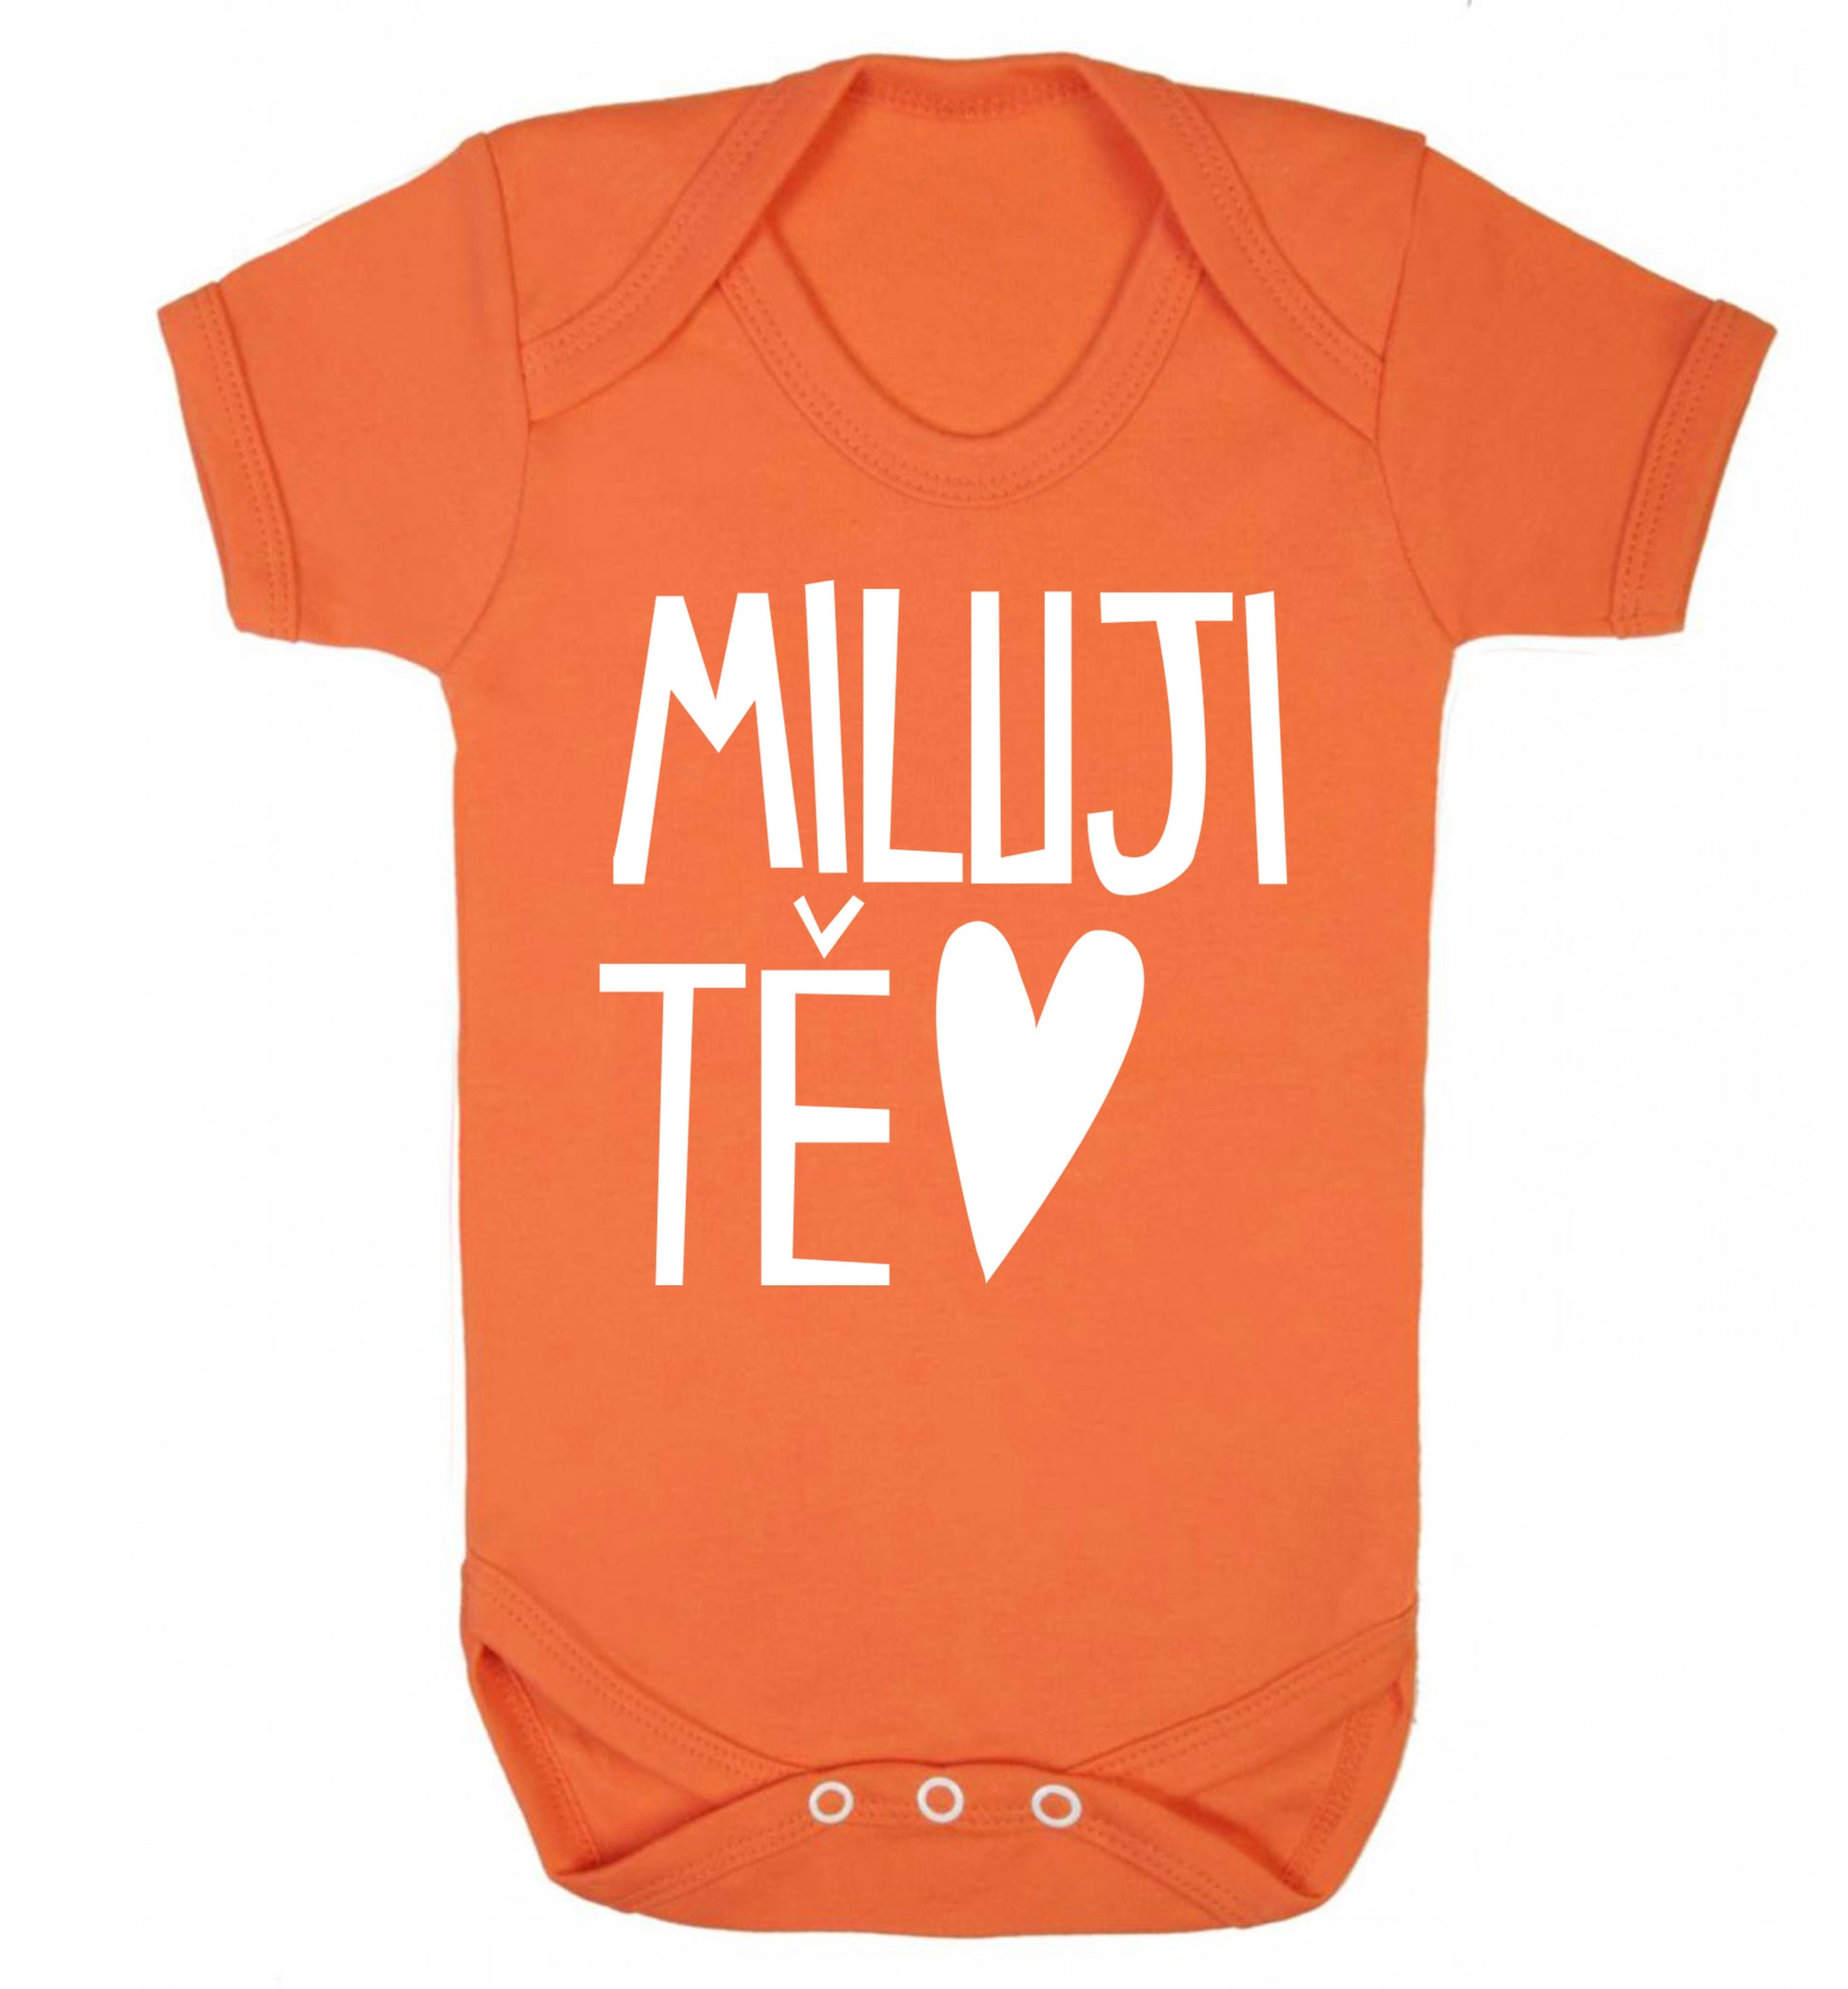 Miluji T_ - I love you Baby Vest orange 18-24 months